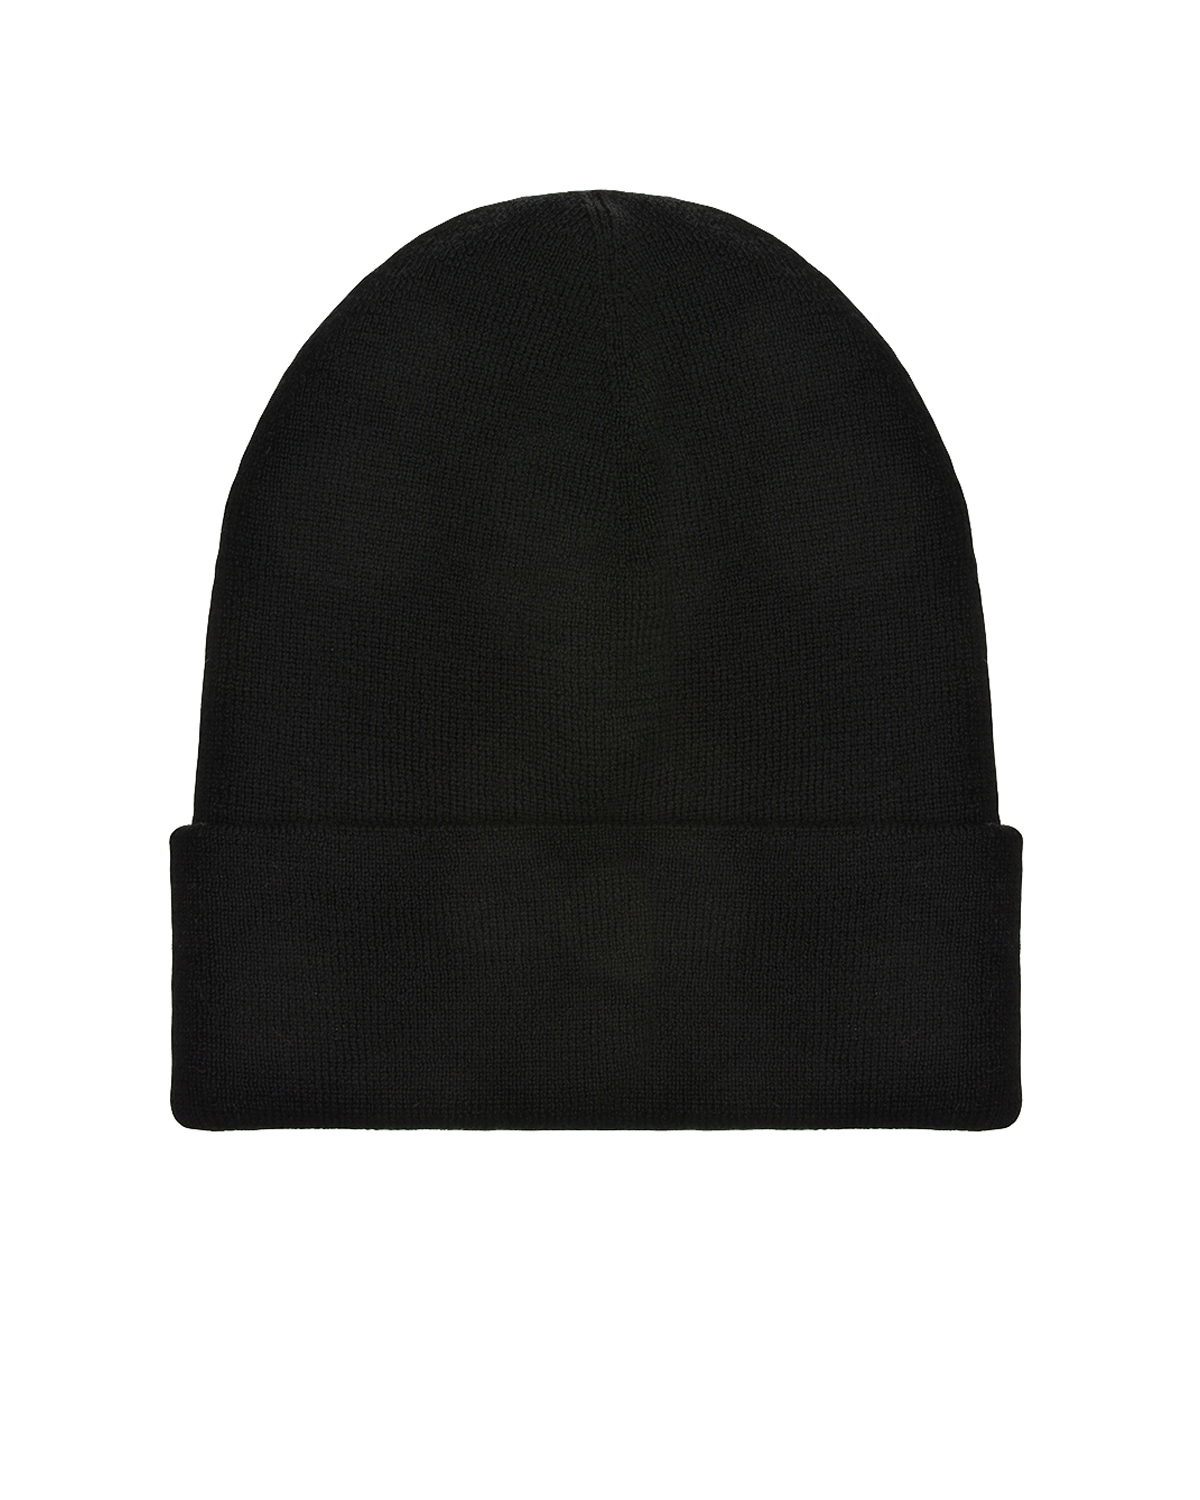 Шерстяная шапка с надписью "Kiss" из бисера Regina детская, размер 57, цвет черный - фото 2